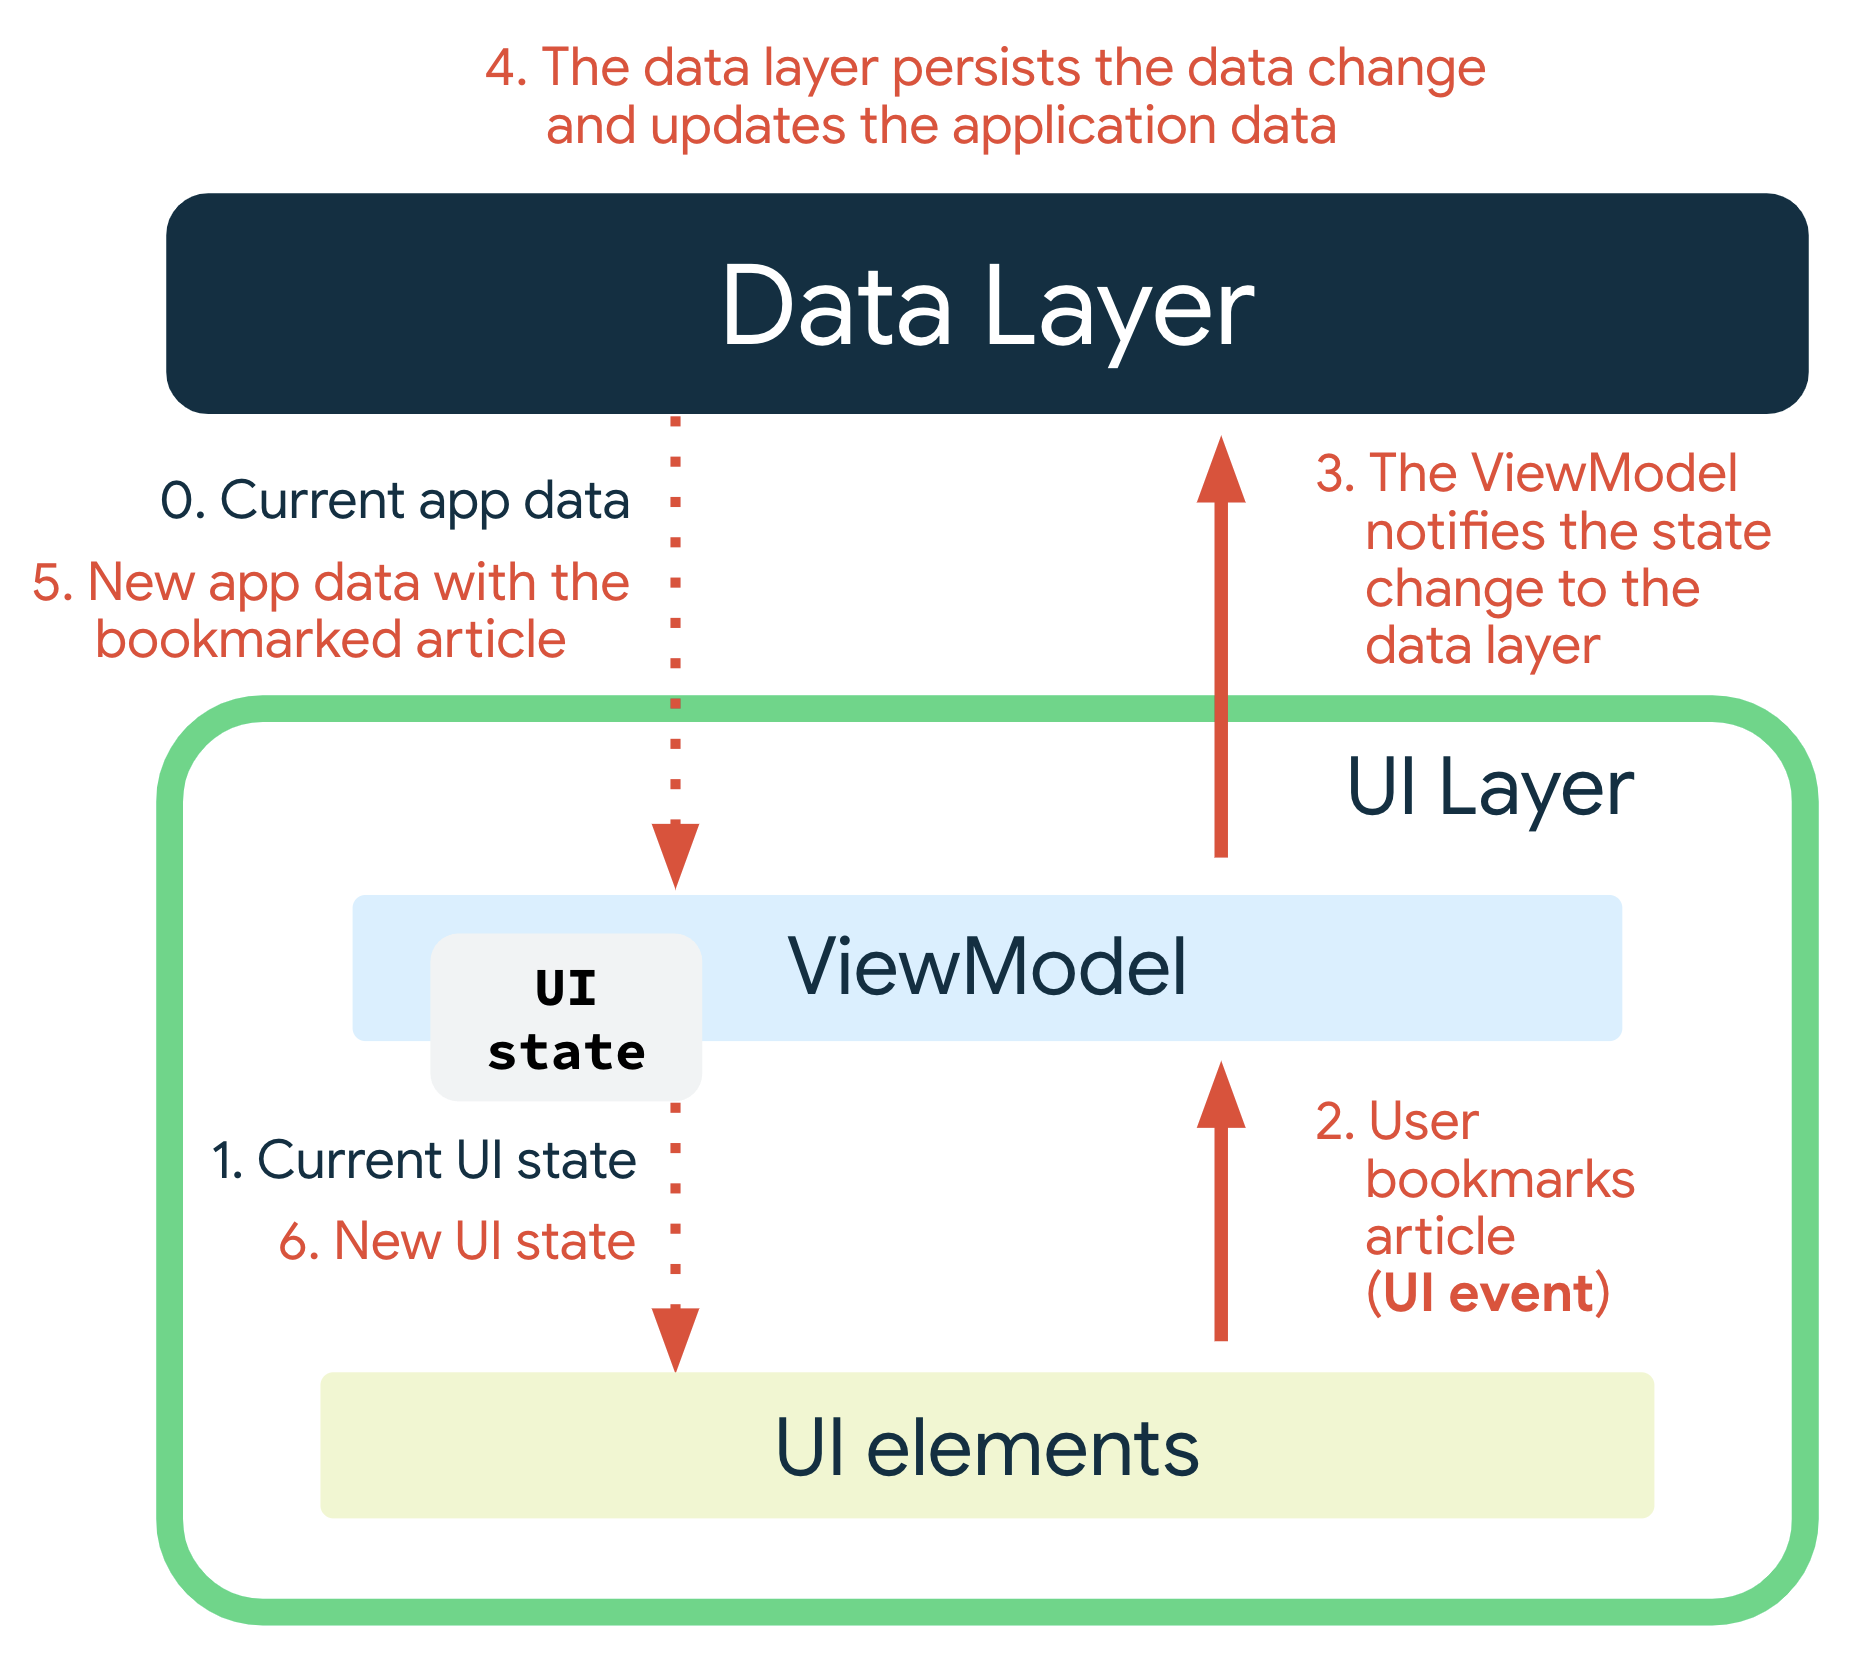 Ein UI-Ereignis tritt auf, wenn der Nutzer ein Lesezeichen für einen Artikel speichert. ViewModel benachrichtigt die Datenschicht über die Statusänderung. Die Datenschicht behält die Datenänderung bei und aktualisiert die Anwendungsdaten. Die neuen App-Daten mit dem als Lesezeichen gespeicherten Artikel werden an das ViewModel übergeben, das dann den neuen UI-Status erzeugt und zur Anzeige an die UI-Elemente übergibt.